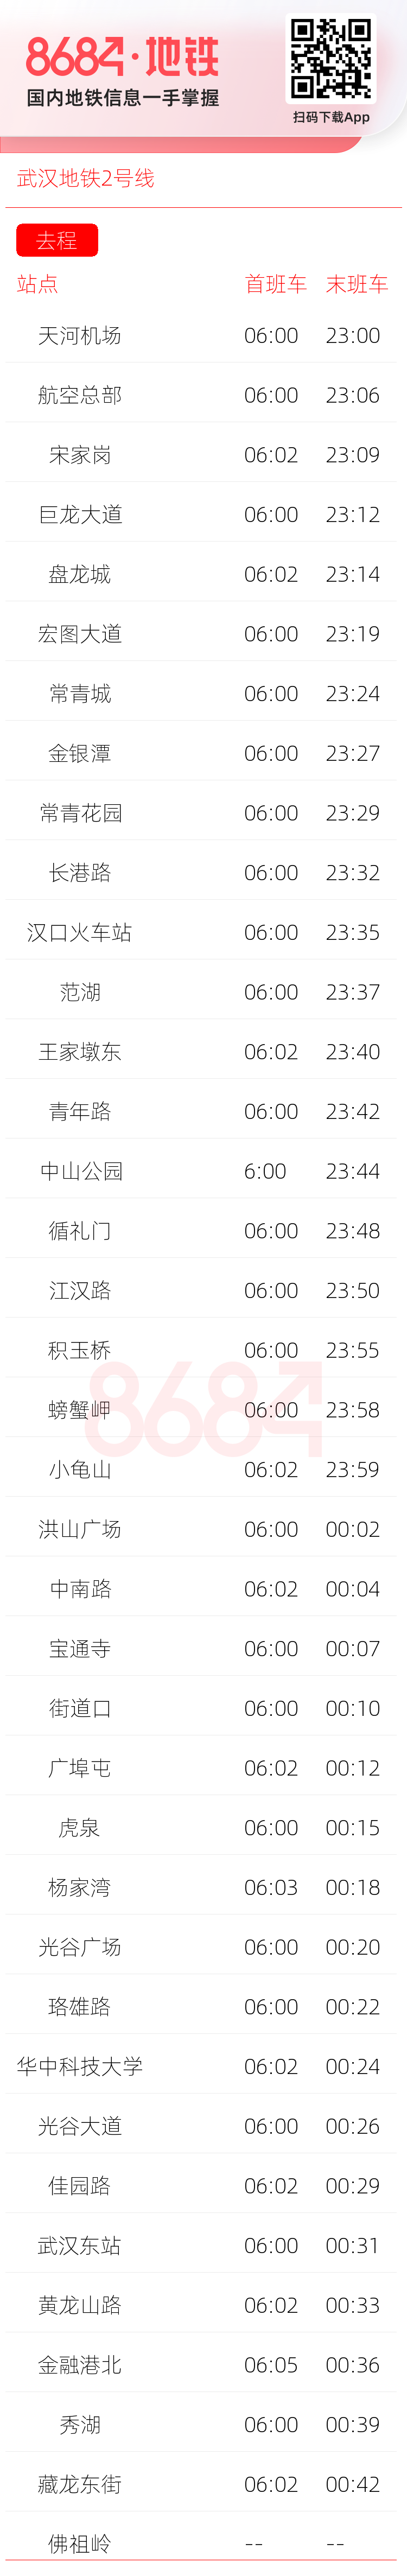 武汉地铁2号线运营时间表